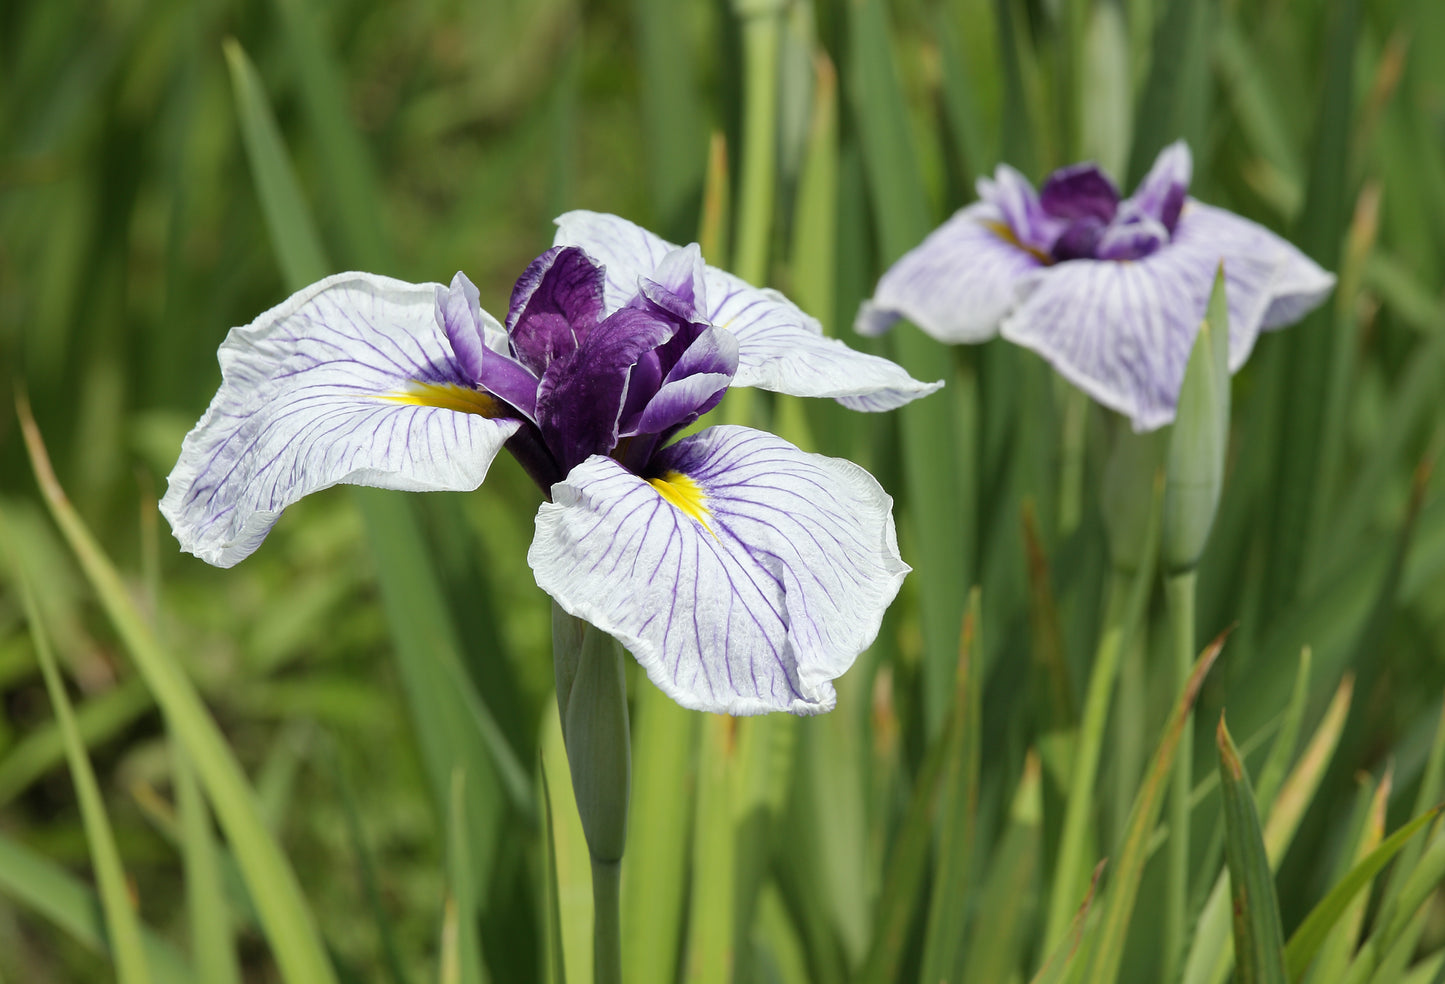 Ensata Iris Iris (Iris ensata)